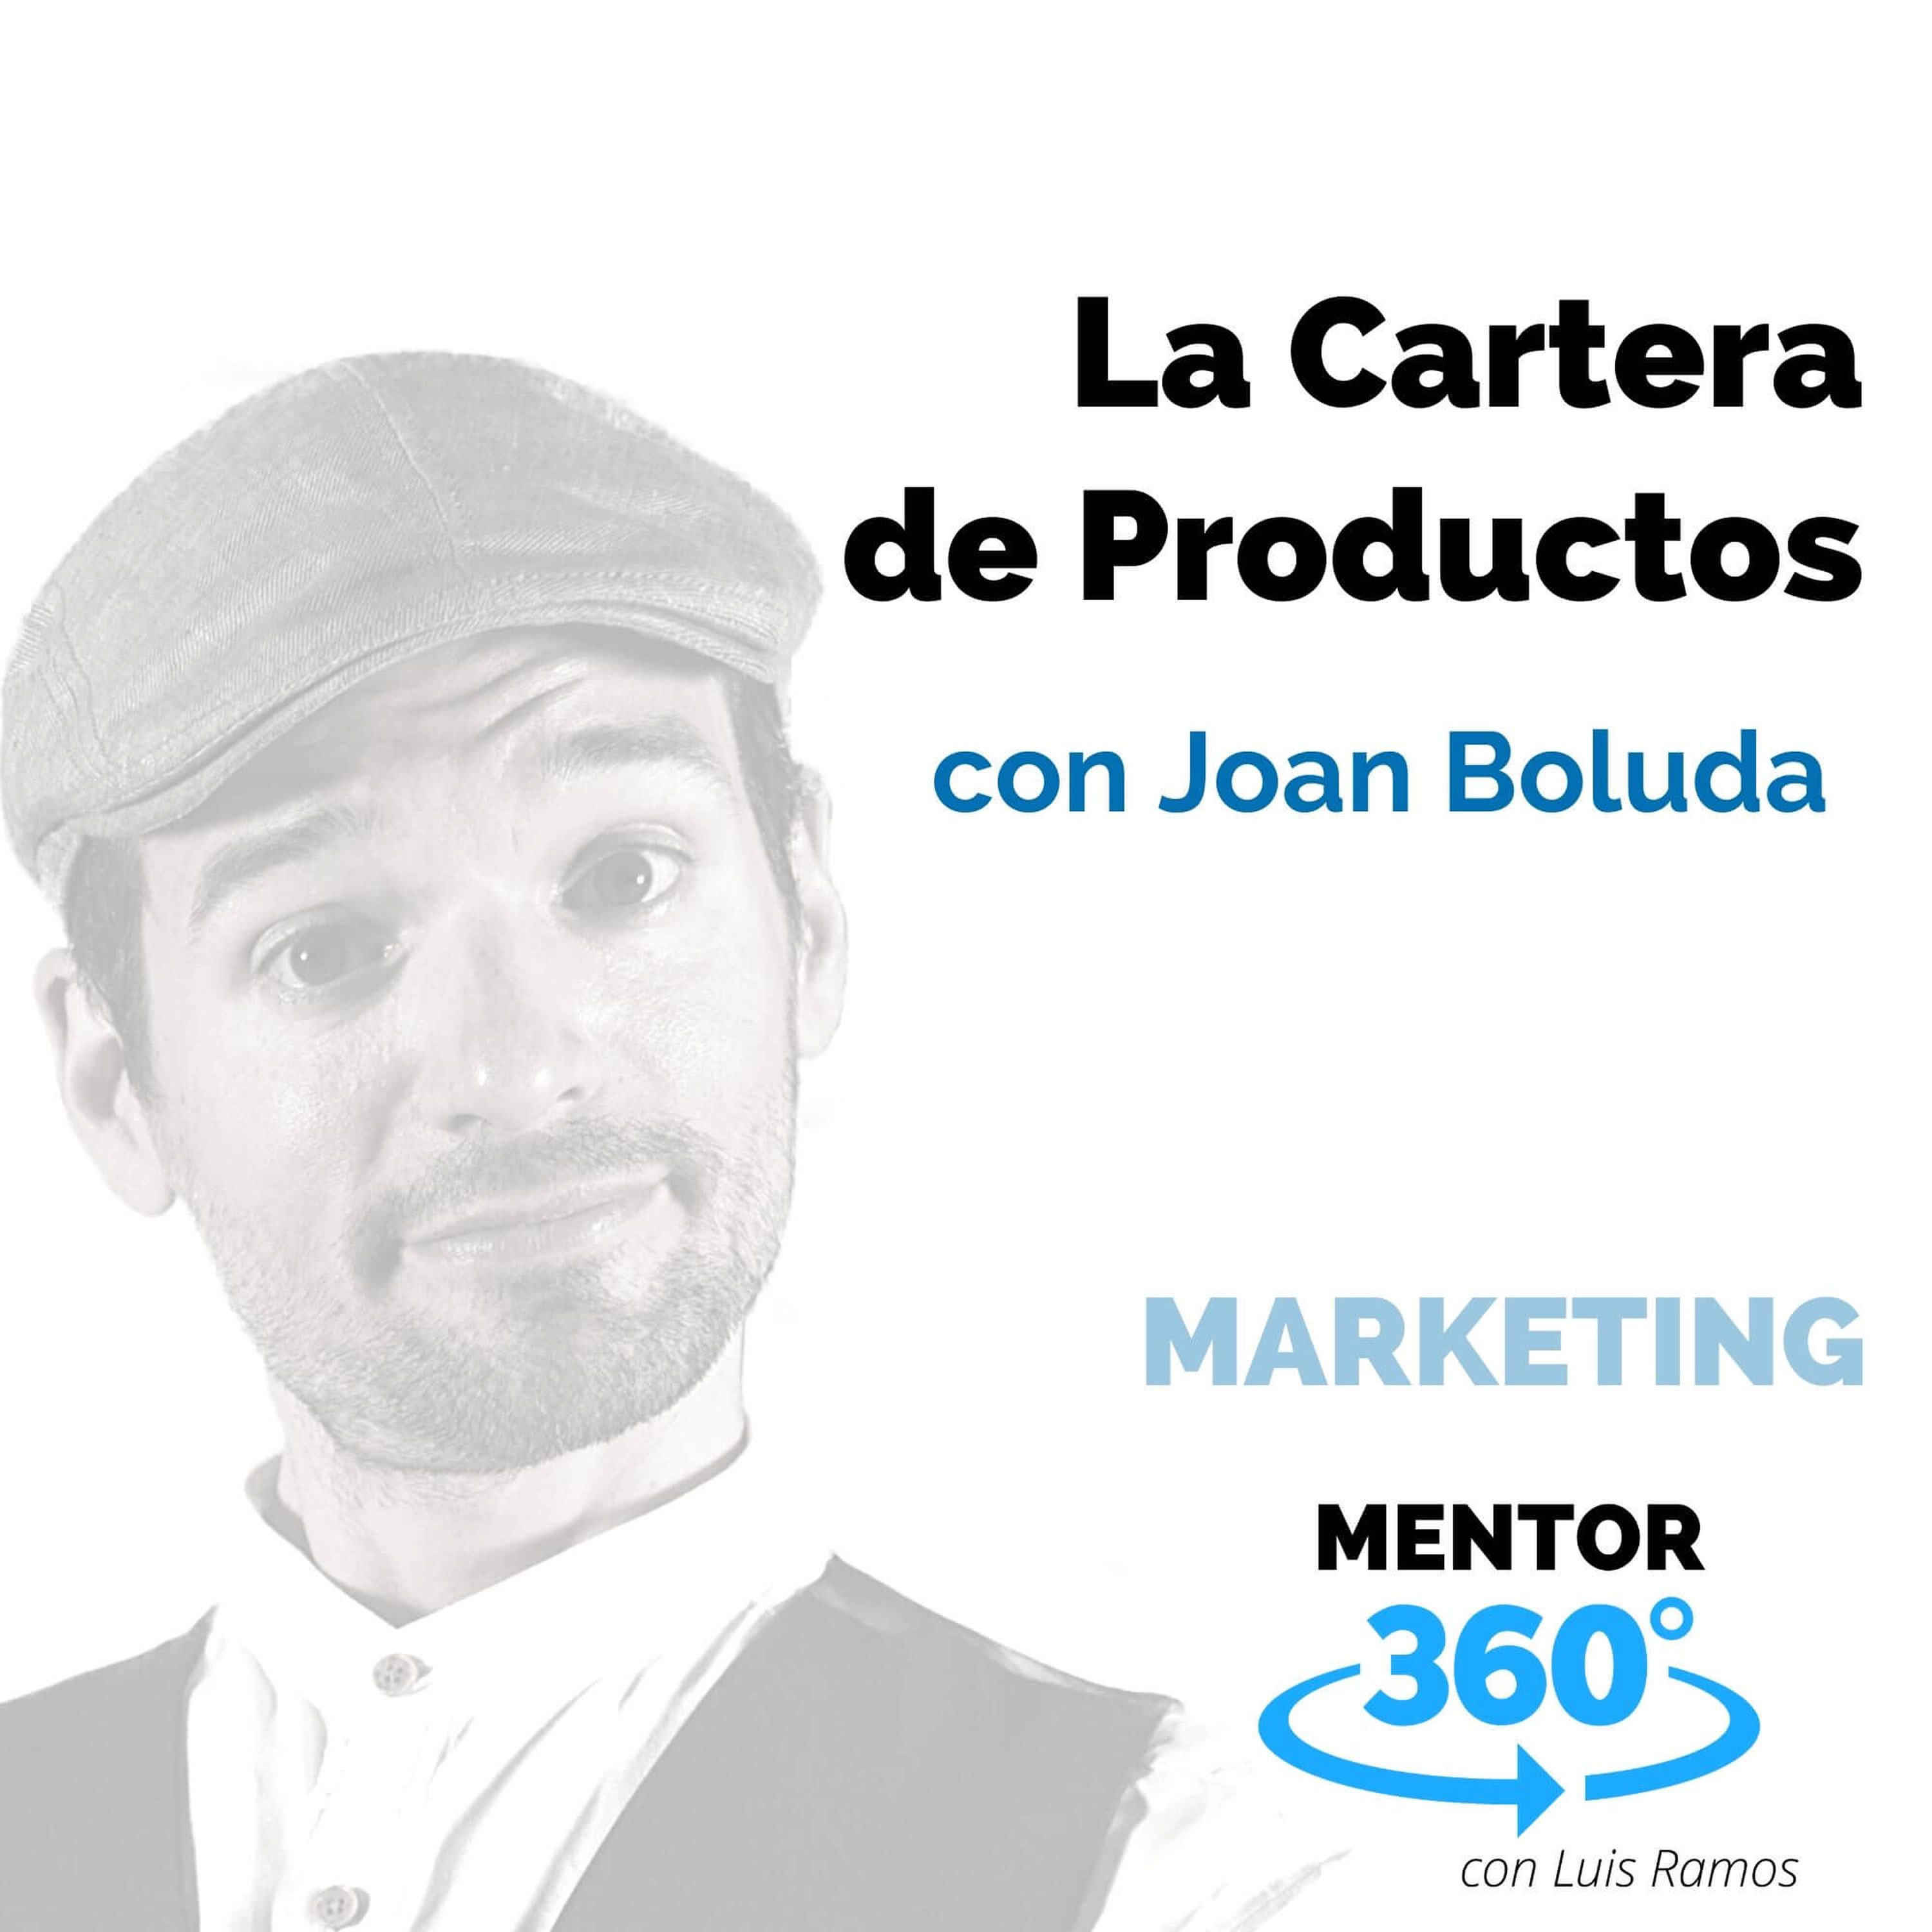 La Cartera de Productos, con Joan Boluda - MARKETING